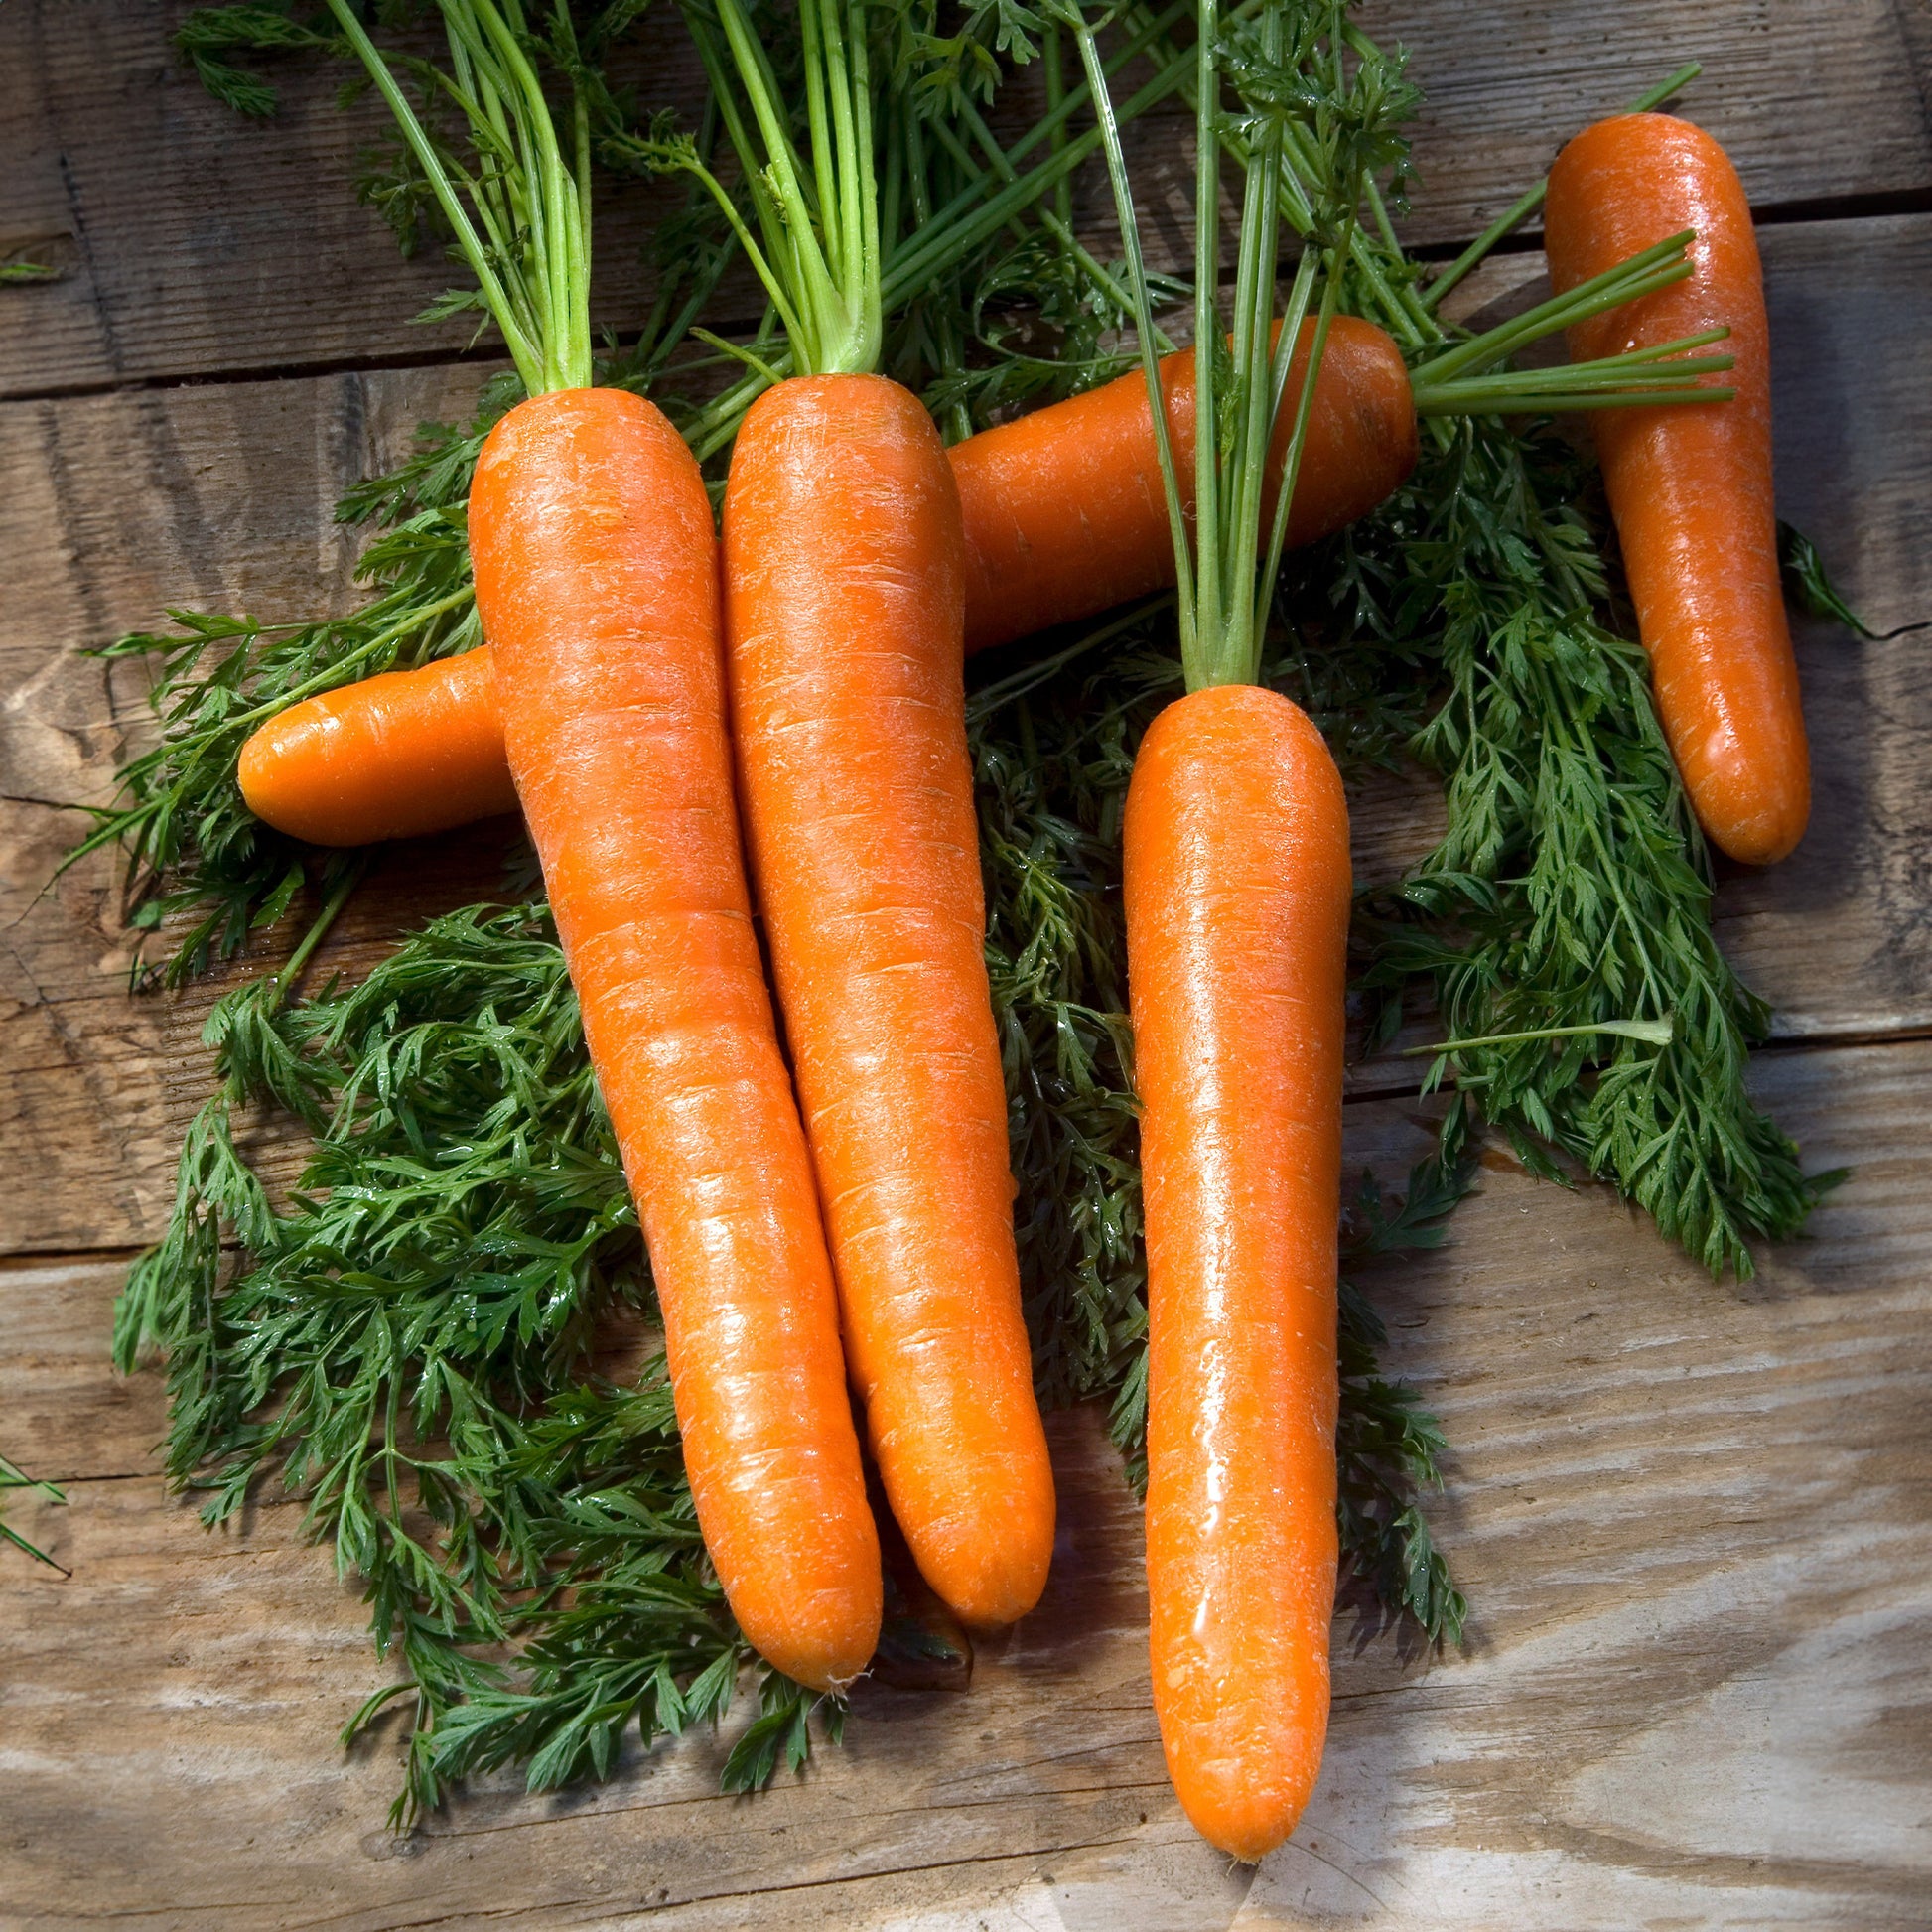 Wortel 'Lange gladde van Meaux' - Daucus carota longue lisse de meaux (30 g) - Zaden